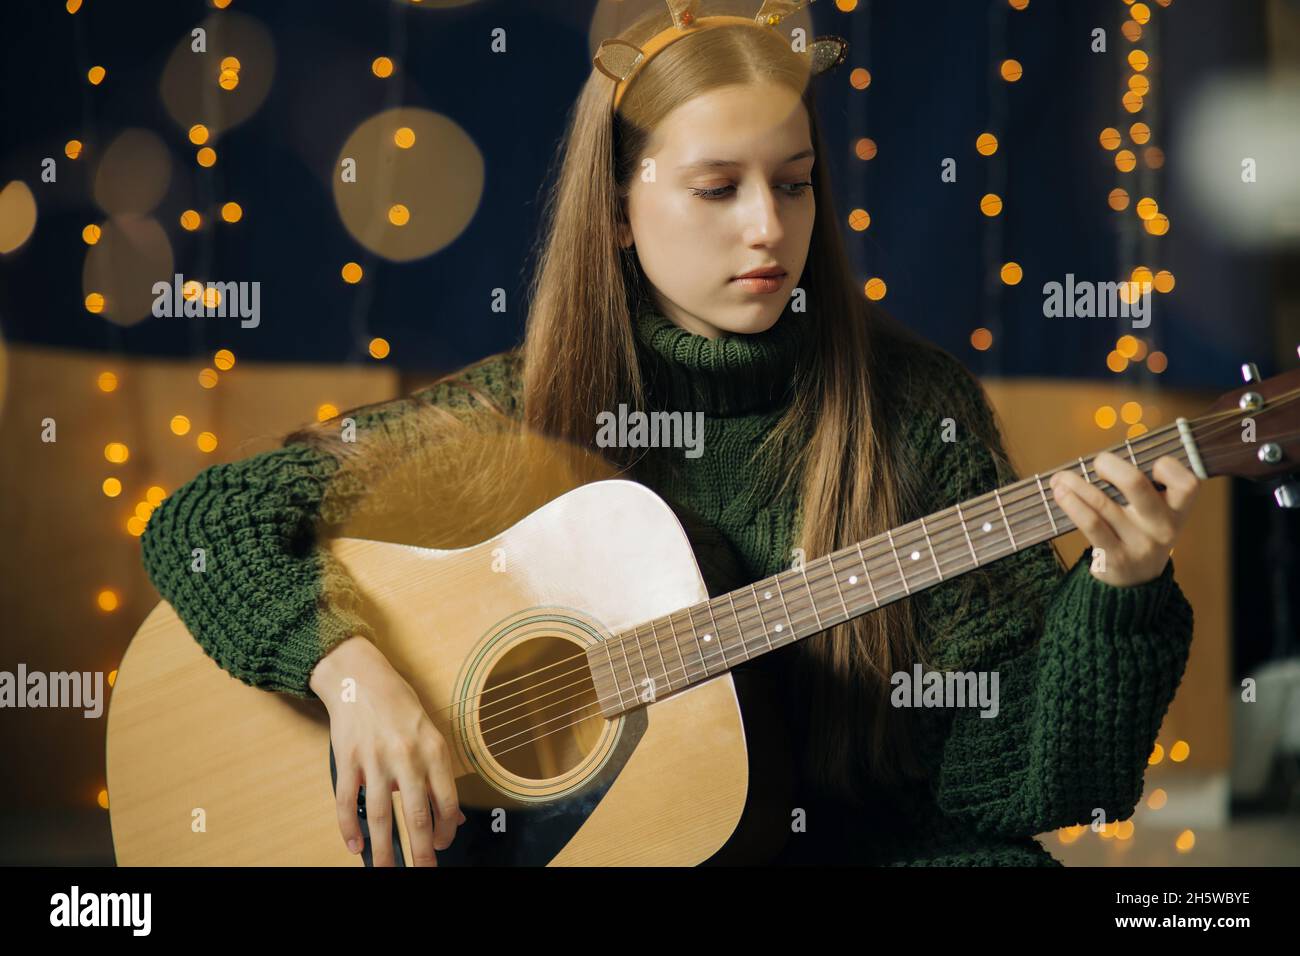 Ein schönes Teenager-Mädchen in weihnachtlichen Geweihen und ein grüner Pullover spielt Gitarre. Häusliche Umgebung, dunkler Hintergrund mit Bokeh aus Weihnachtslicht Stockfoto